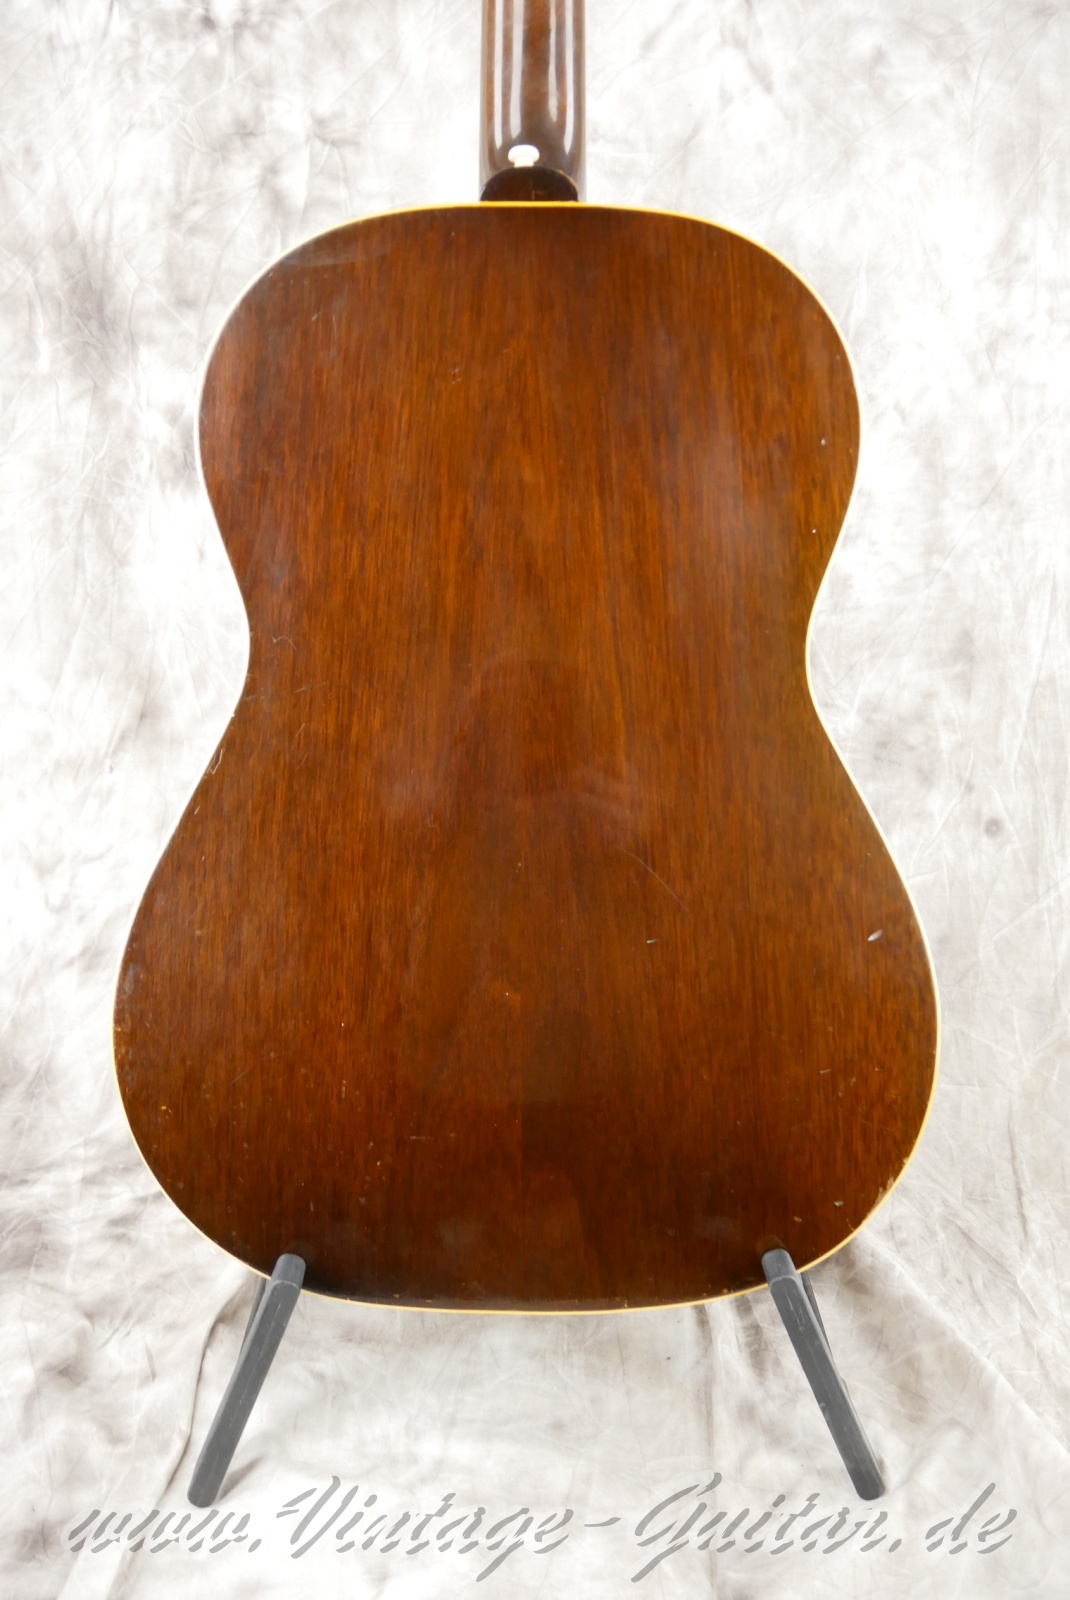 Gibson-LG1-1955-sunburst-008.jpg